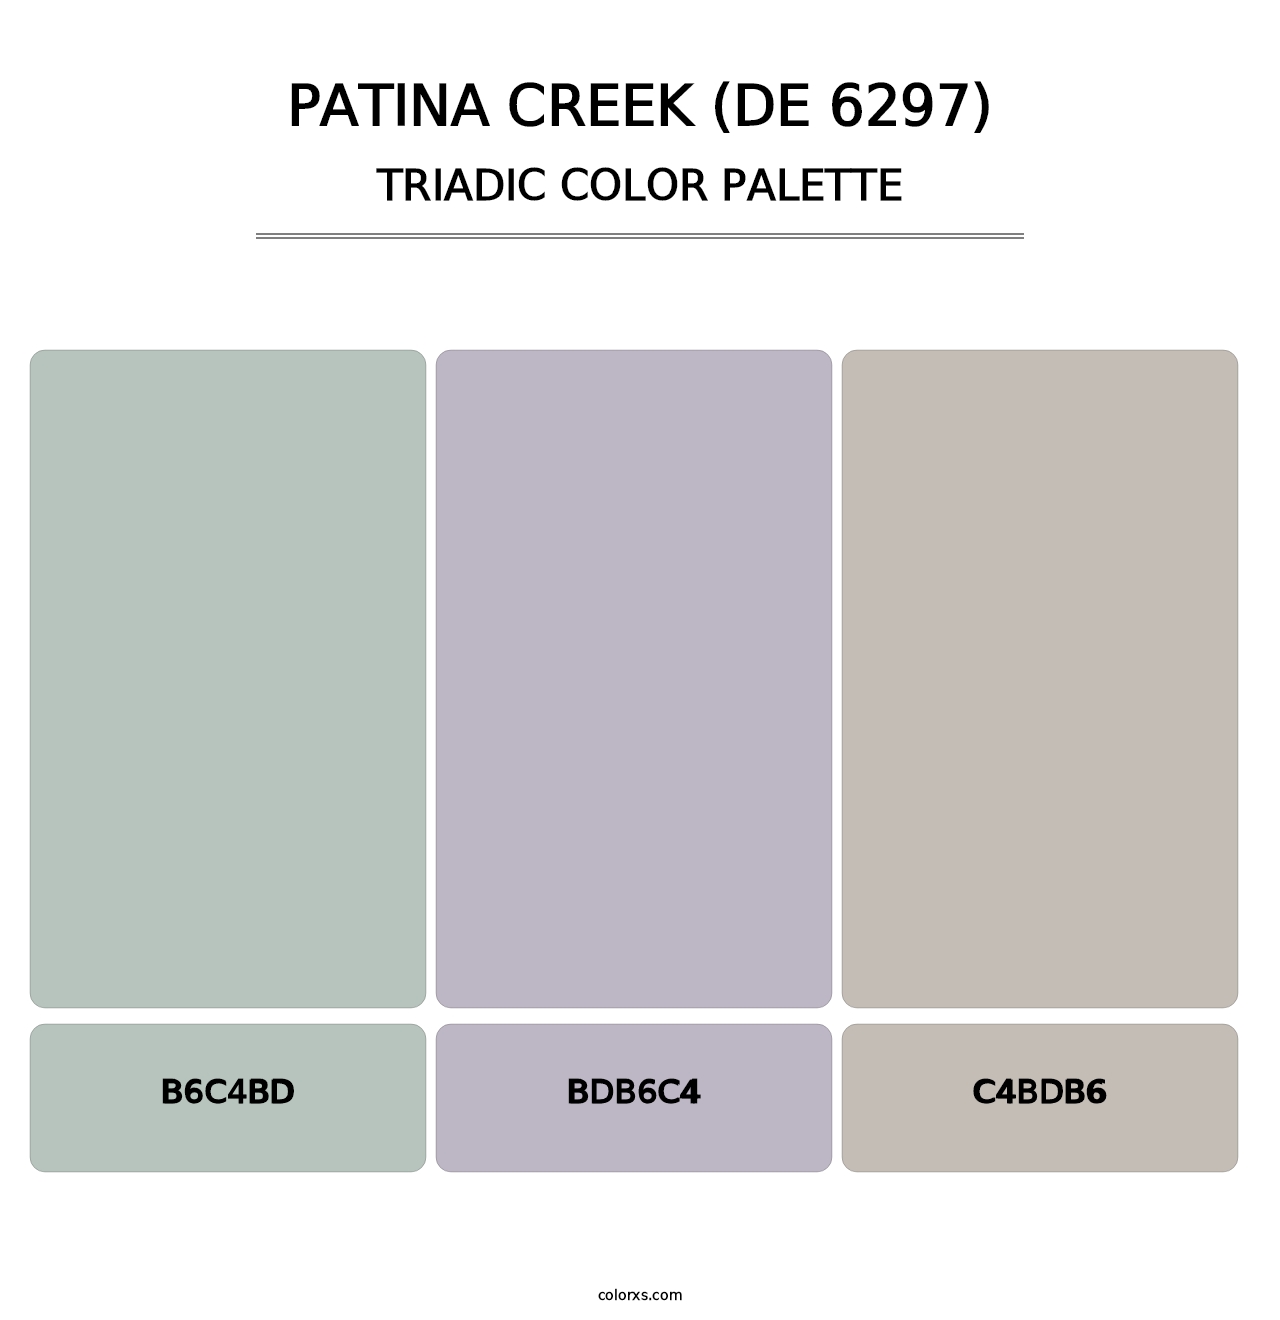 Patina Creek (DE 6297) - Triadic Color Palette